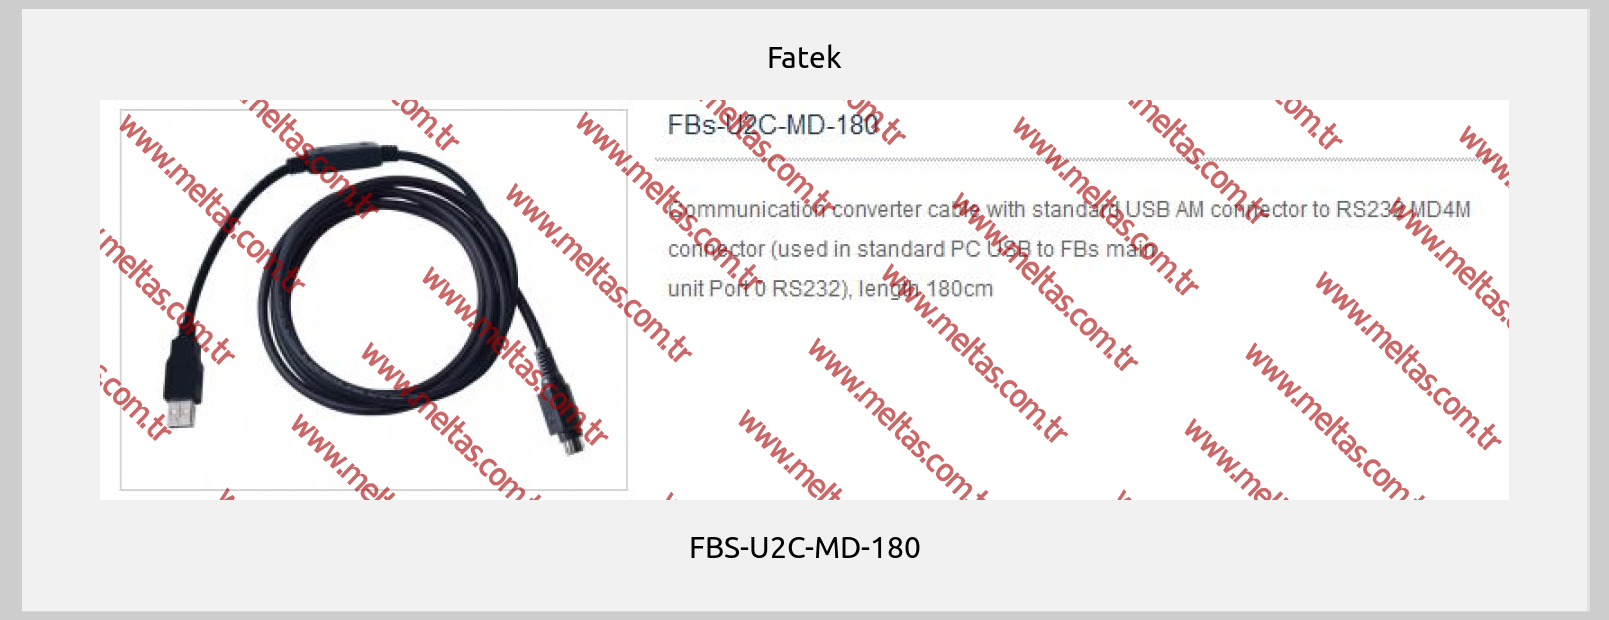 Fatek-FBS-U2C-MD-180